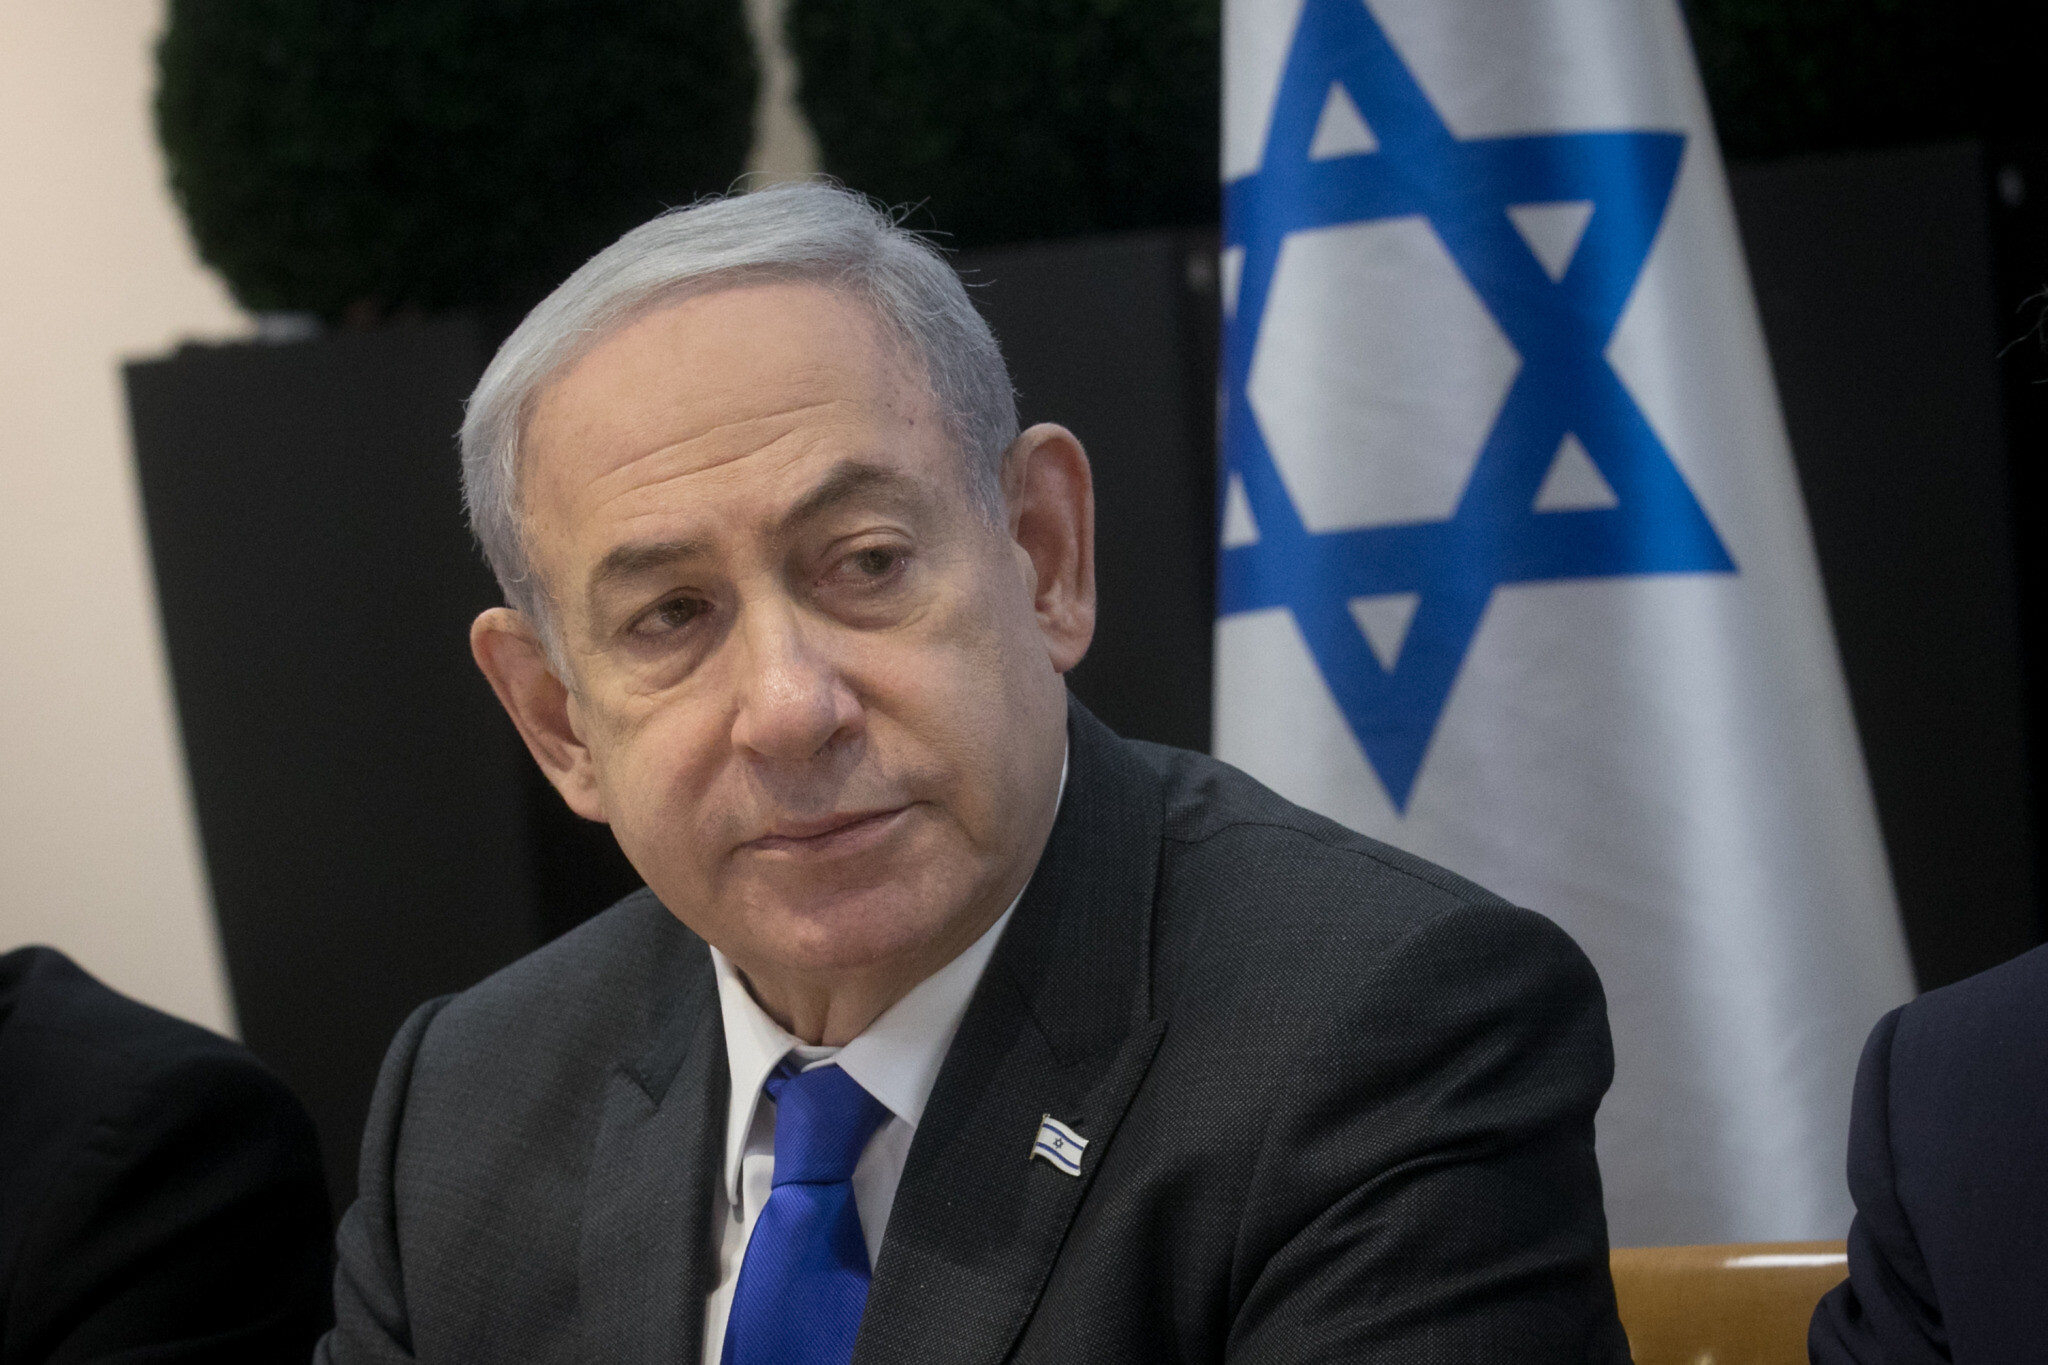 Storia dell'attrazione fatale tra Netanyahu e Hamas: sulla pelle di due popoli